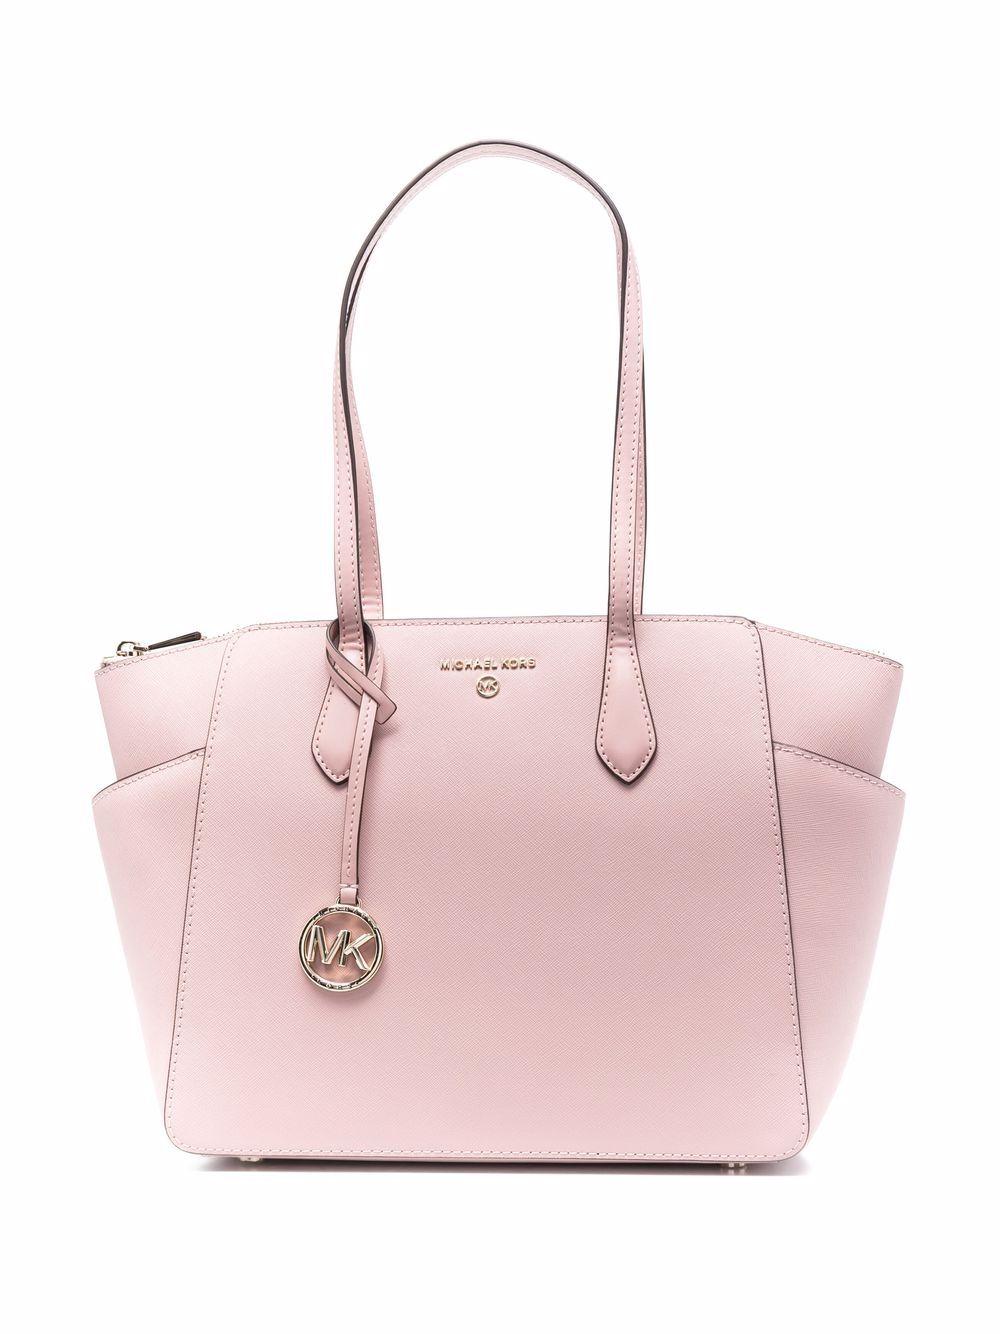 MICHAEL Michael Kors Medium Marilyn Tote Bag in Pink